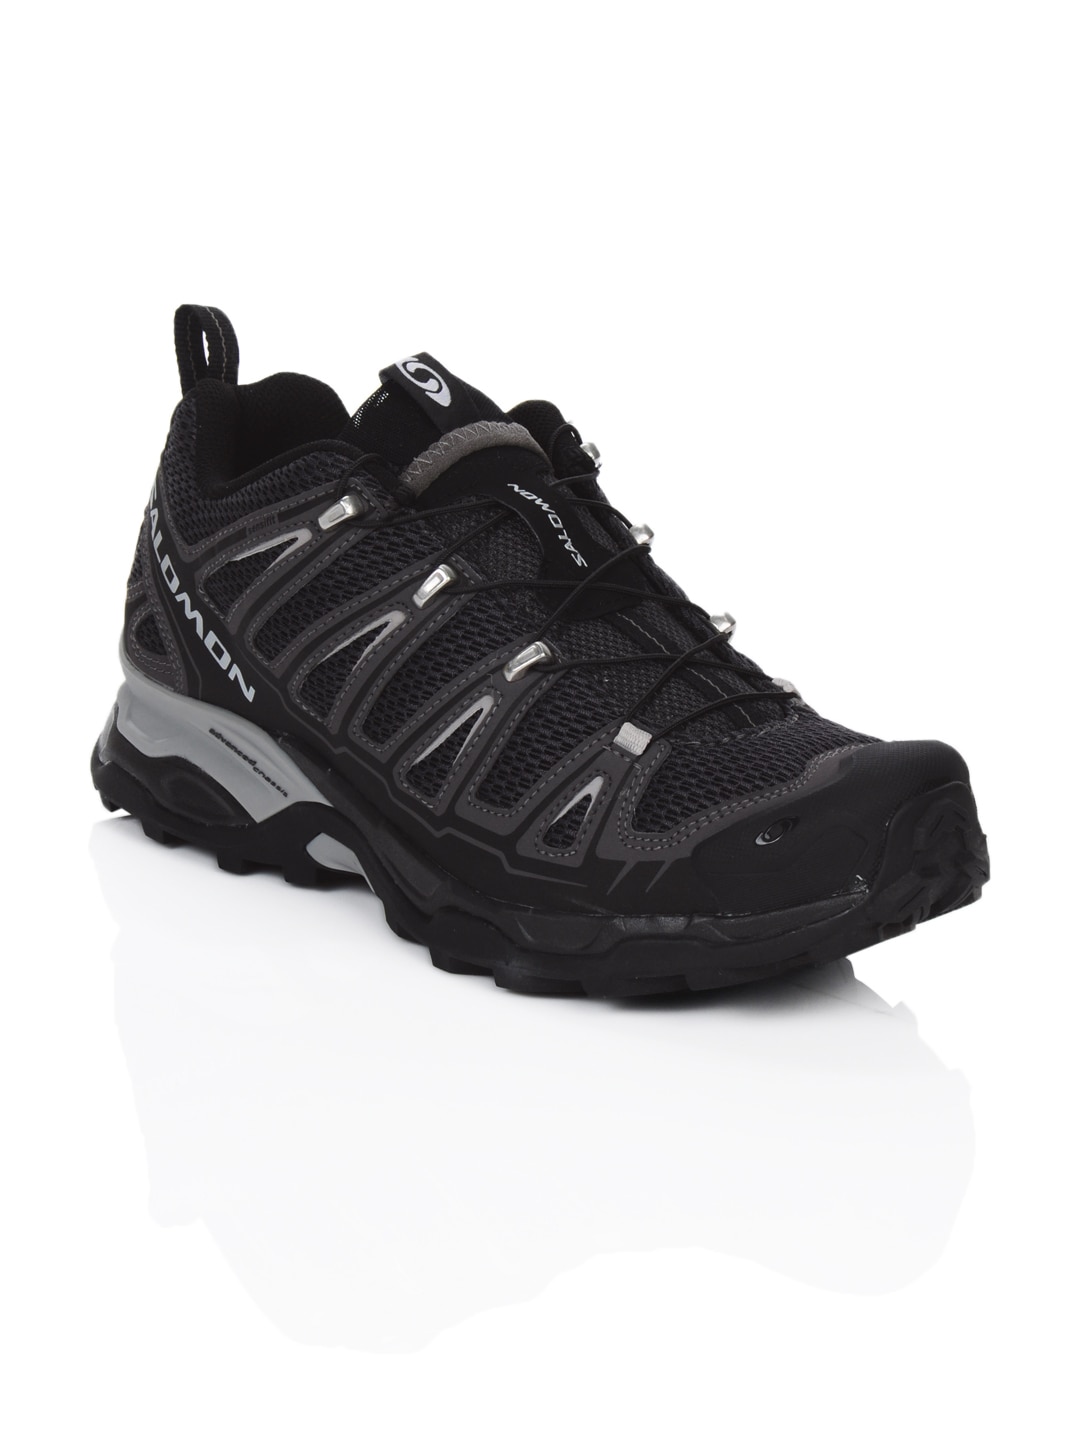 Salomon Men X Ultra Black Sports Shoes